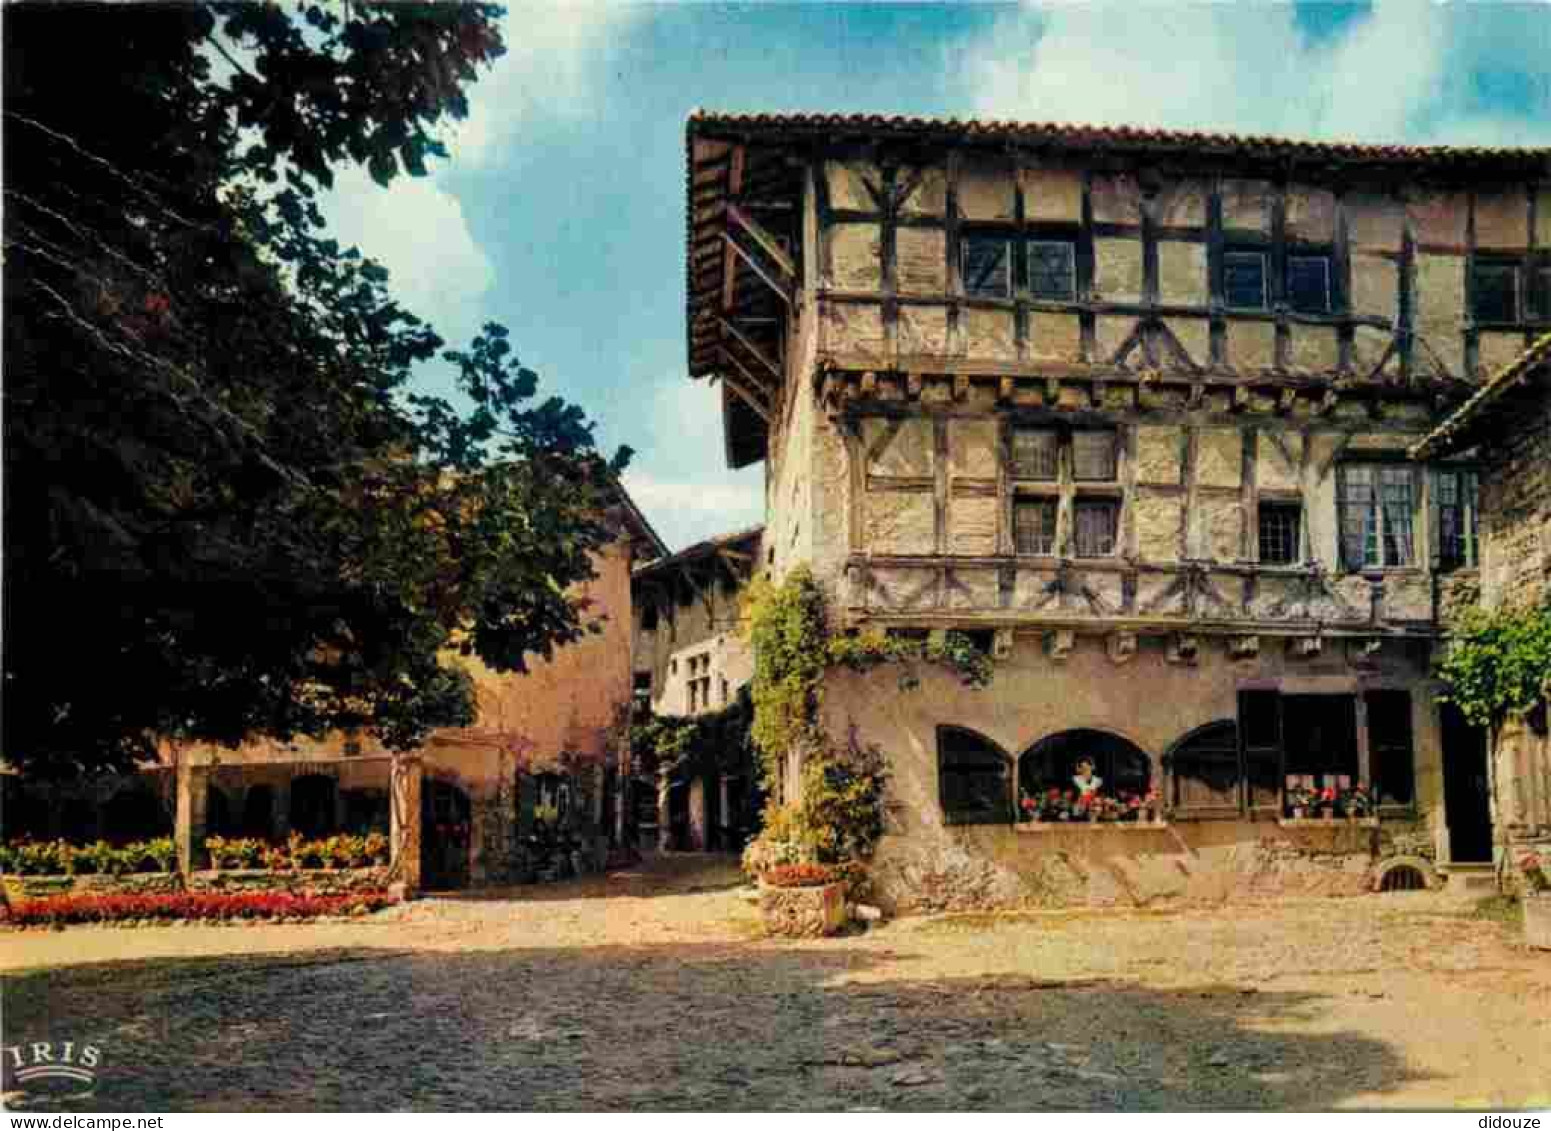 01 - Pérouges - L'Hostellerie - Monument Historique Du XllIe Siècle Et La Rue Du Prince - Cité Médiévale - Vieilles Pier - Pérouges